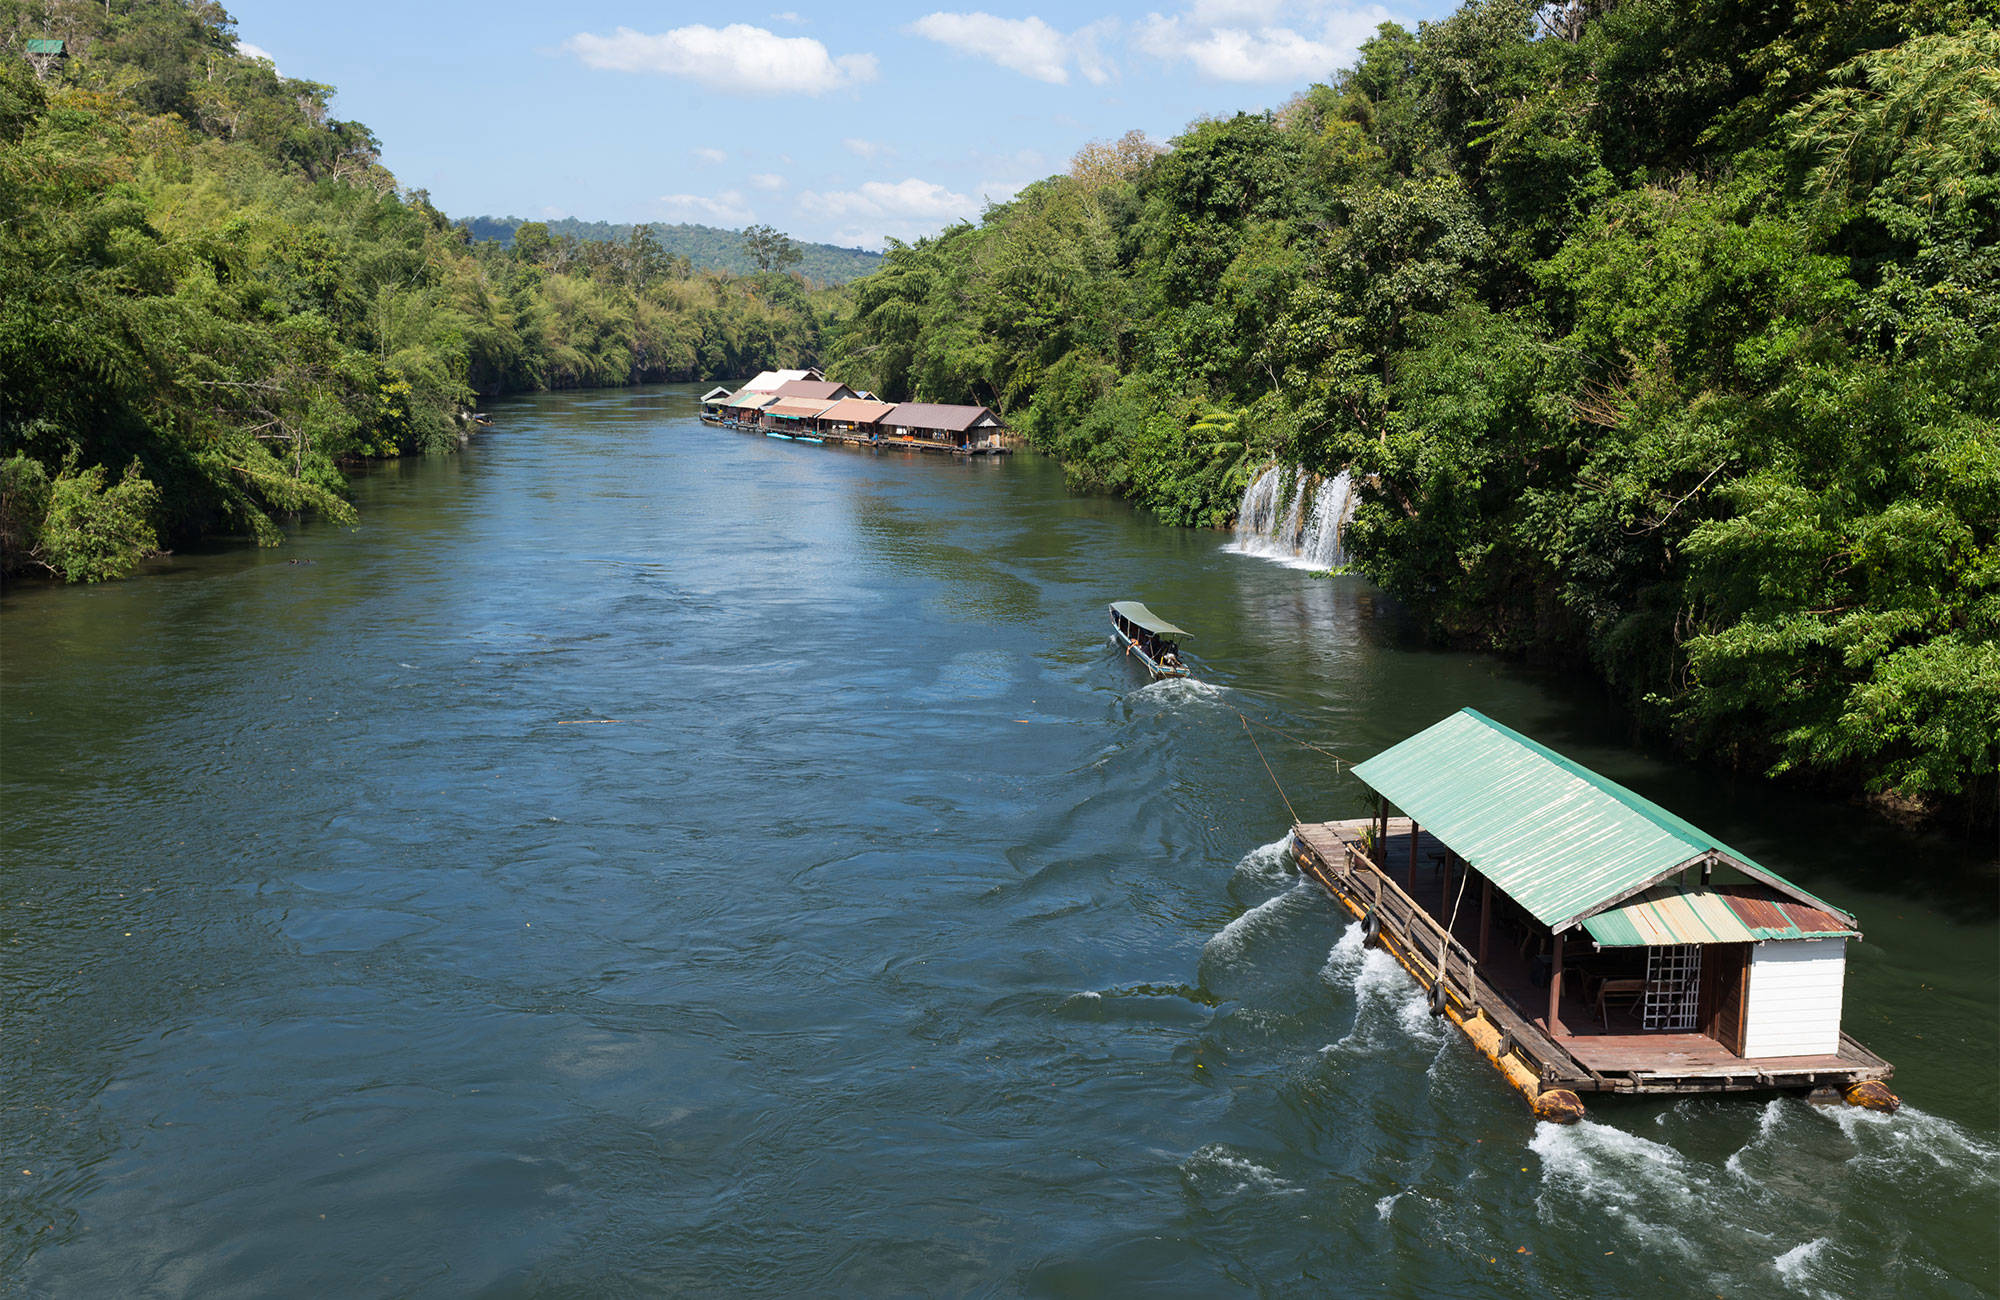 Sai Yok Boat Pulling Float On River